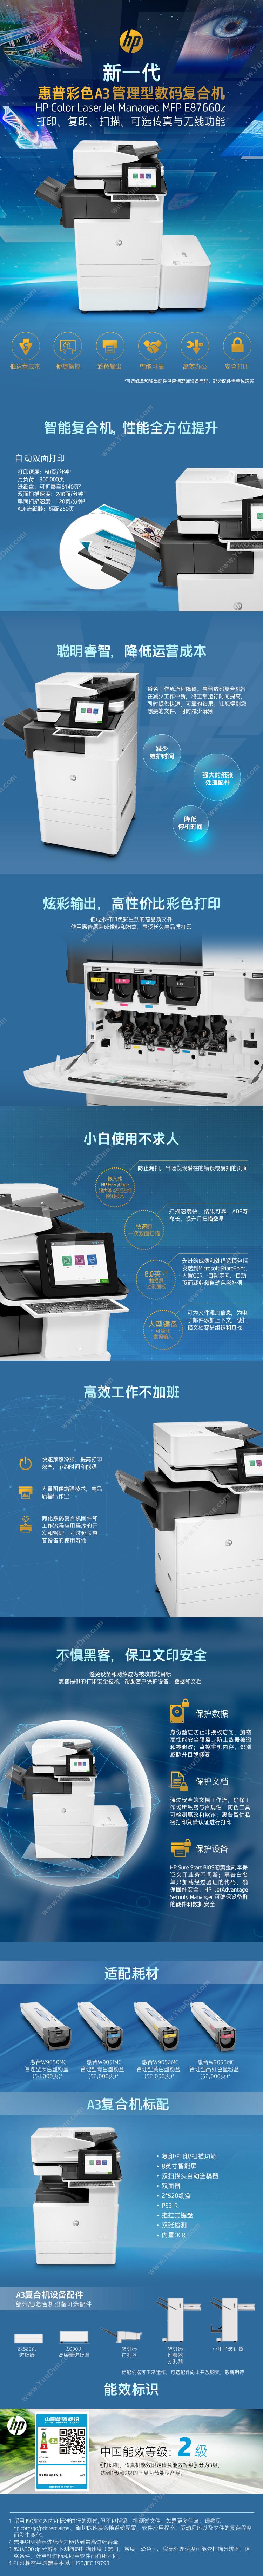 惠普 HP A3X3A81AE77825dn(带服务) 激光复合打印机